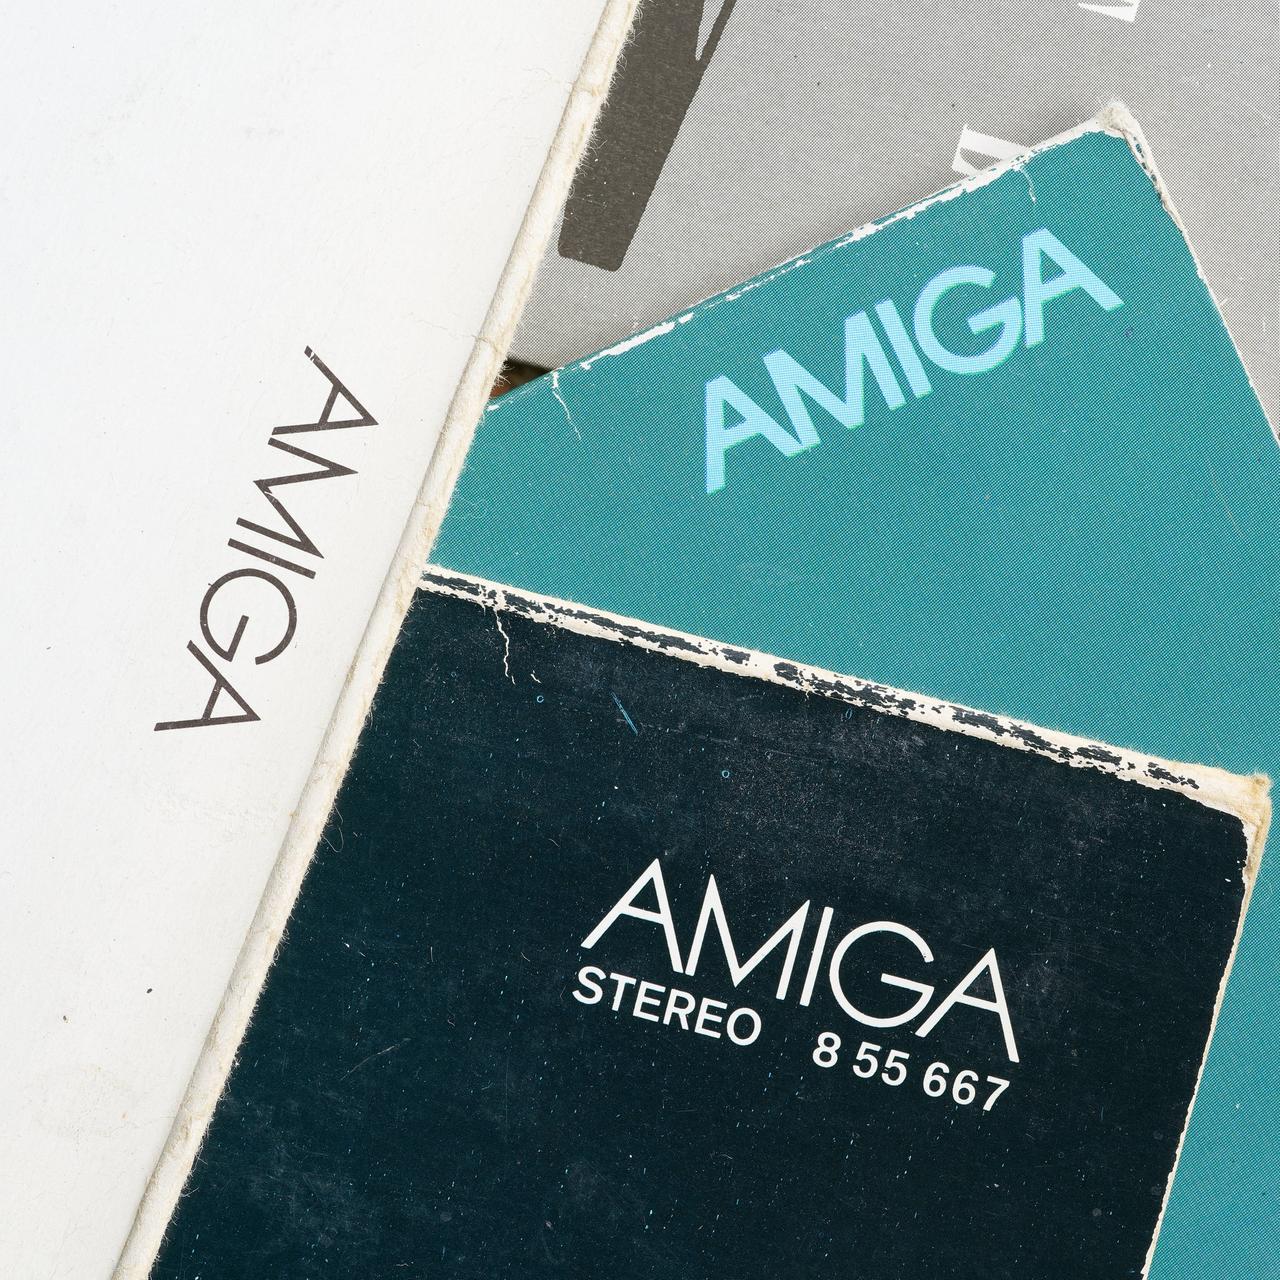 Schallplatten des ehemaligen DDR-Plattenlabels Amiga, welches heute zu Sony Music gehört. 